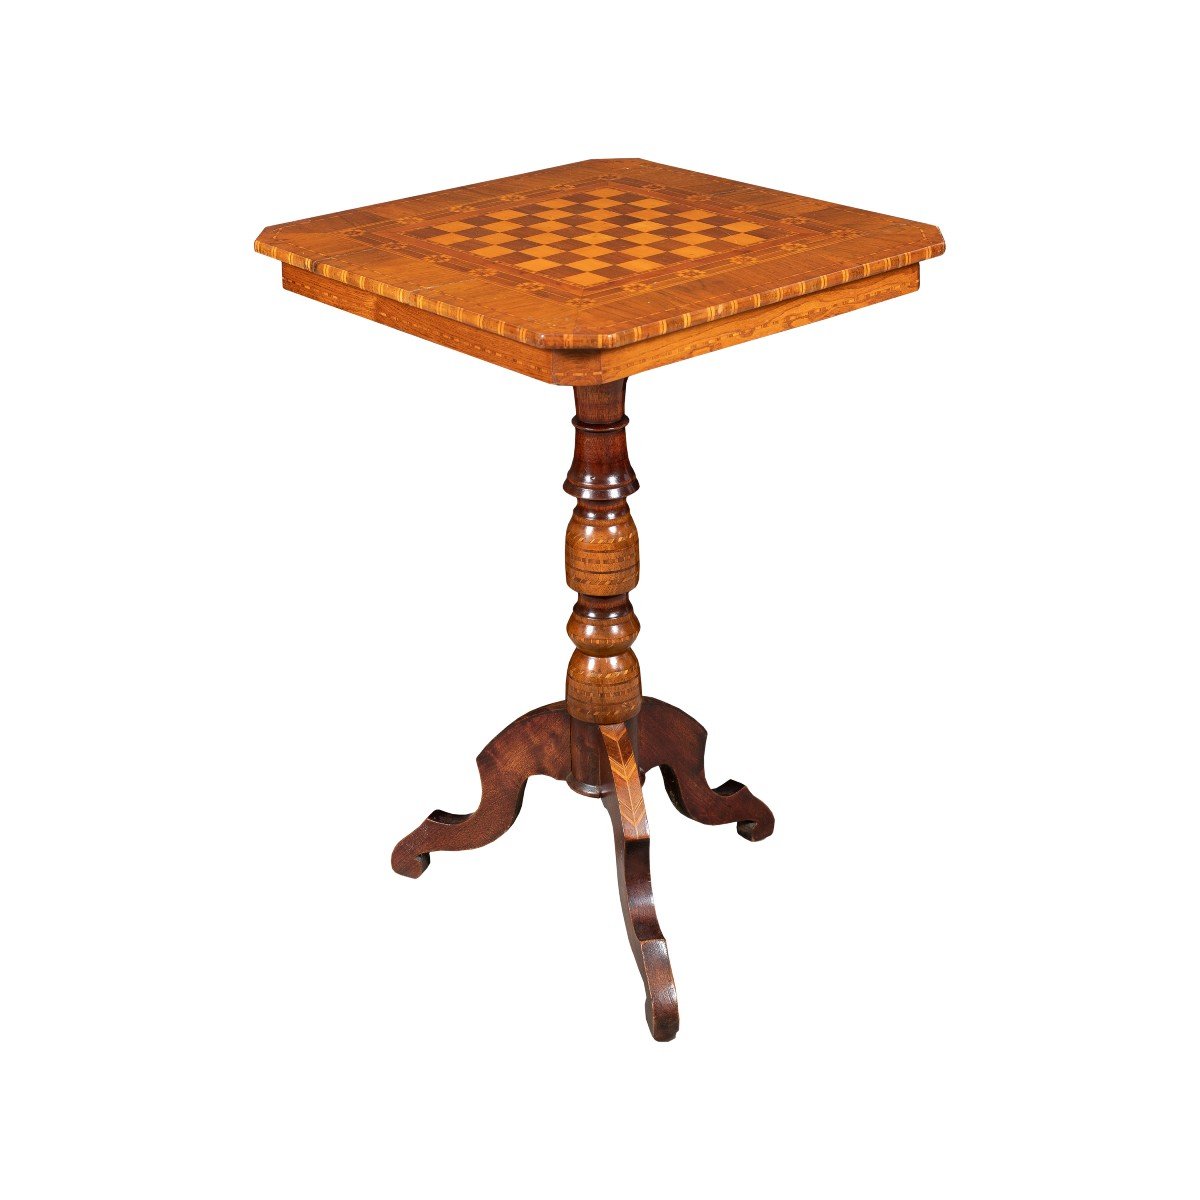 Tavolino in legno intarsiato. Sorrento, inizi XIX sec.